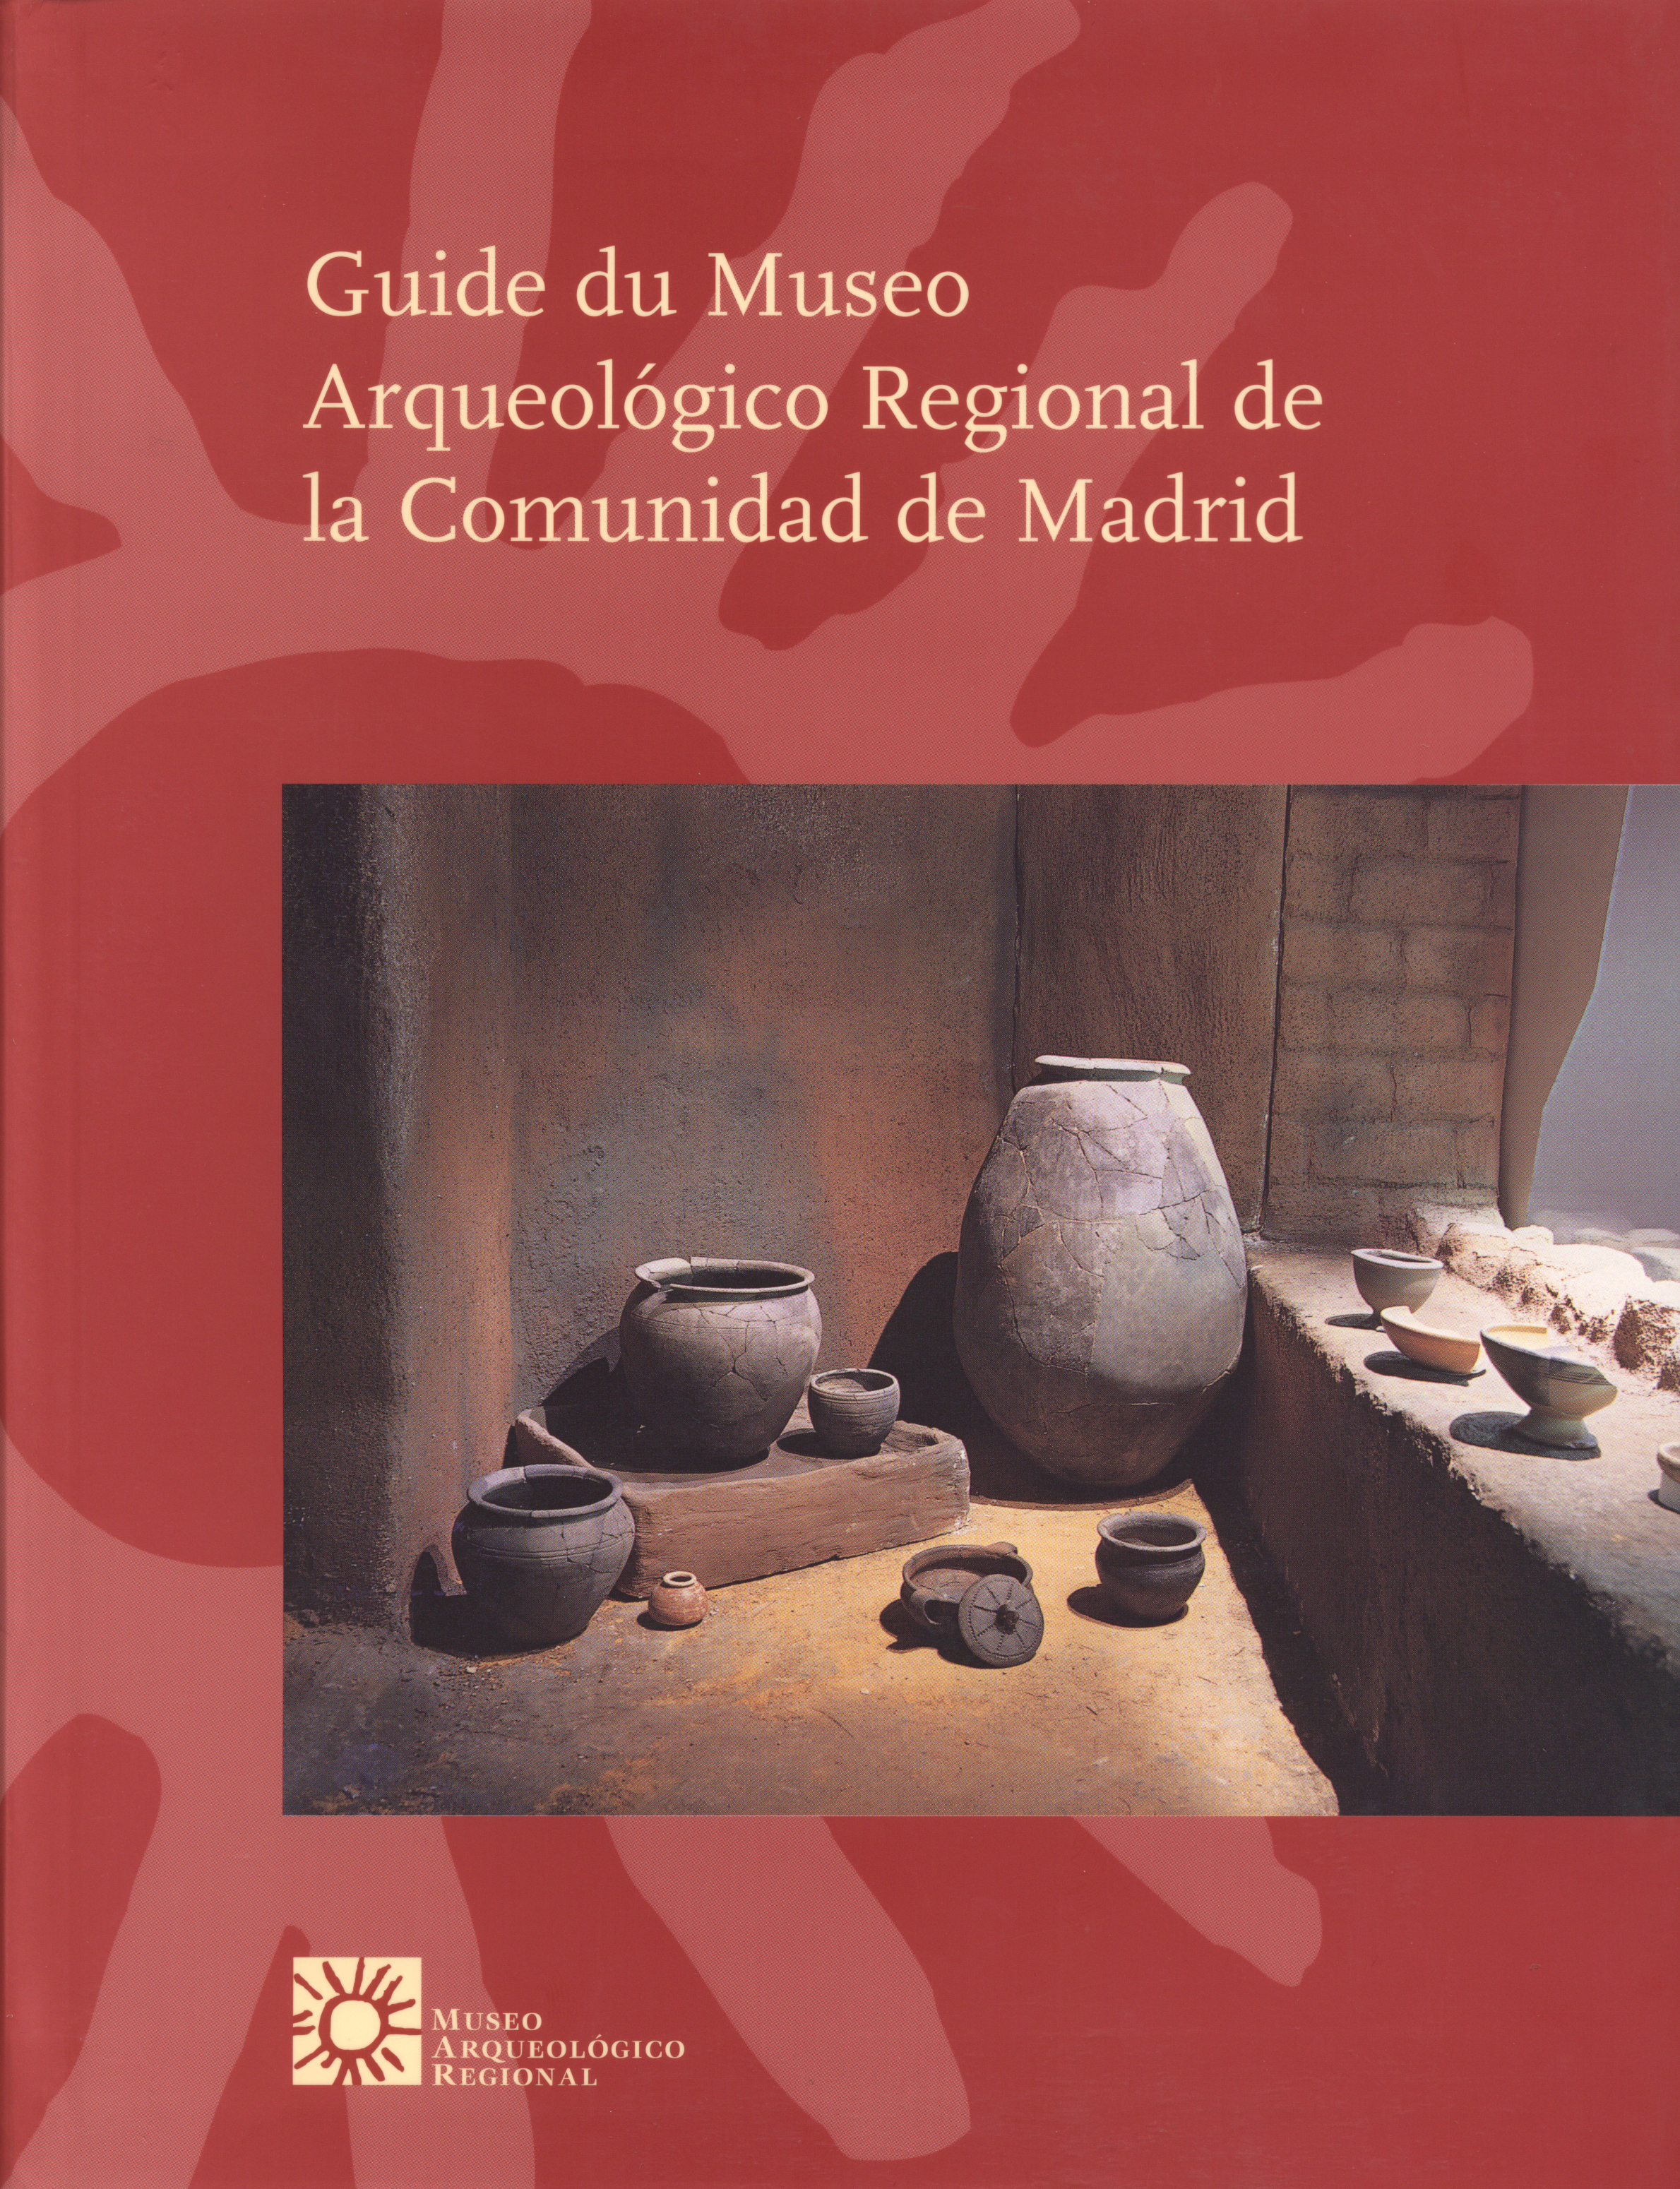 Guide du Museo Arqueológico Regional de la Comunidad de Madrid